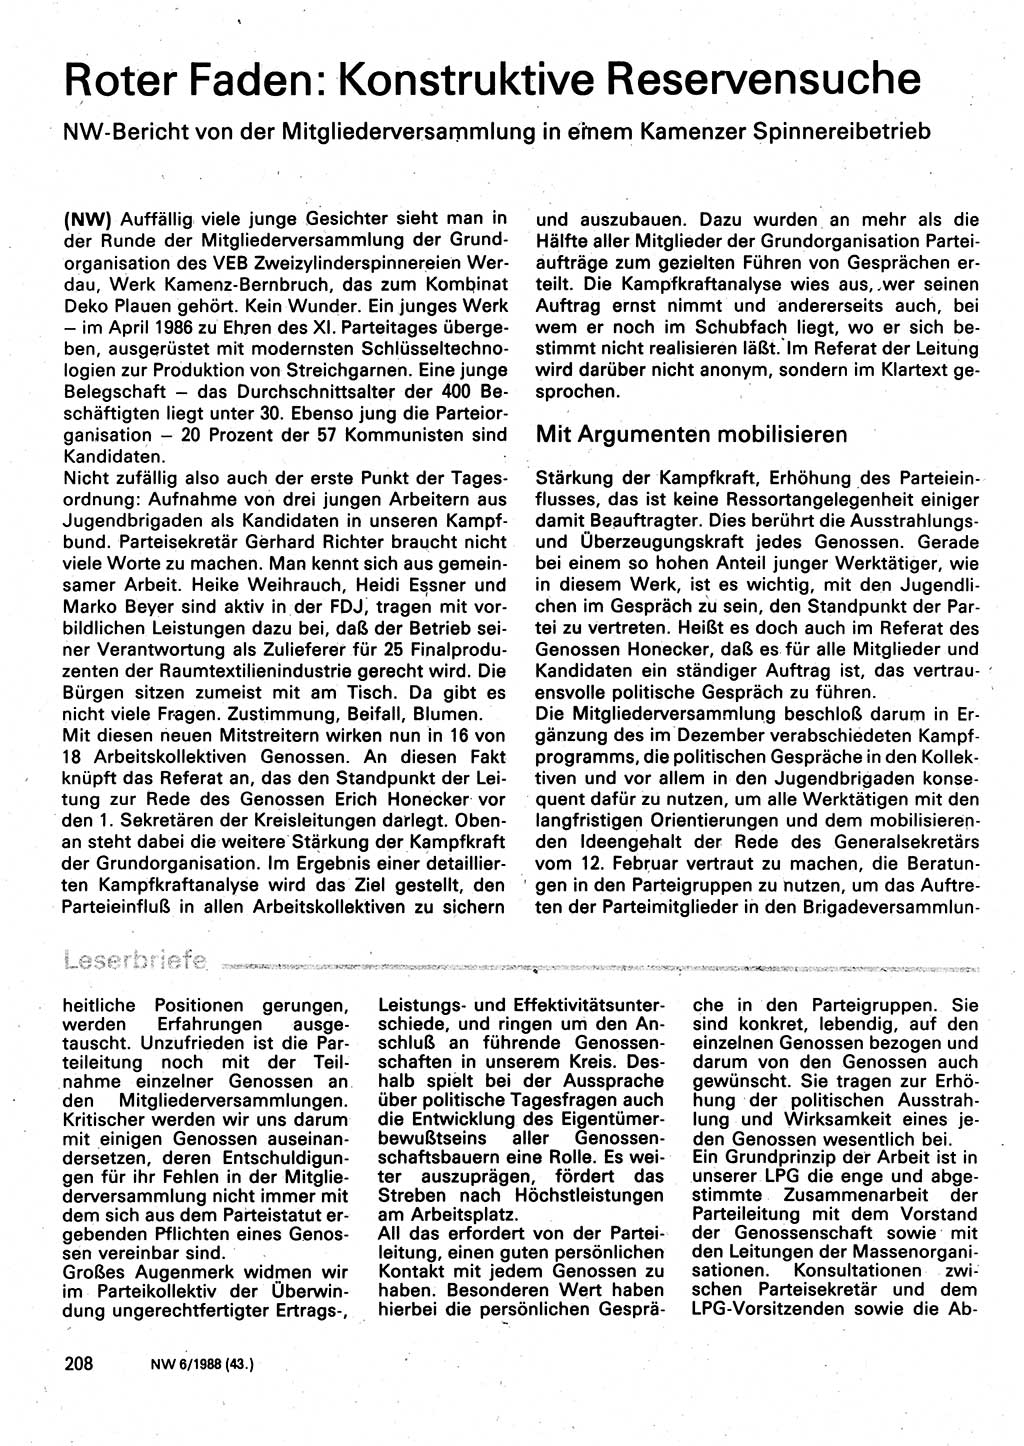 Neuer Weg (NW), Organ des Zentralkomitees (ZK) der SED (Sozialistische Einheitspartei Deutschlands) für Fragen des Parteilebens, 43. Jahrgang [Deutsche Demokratische Republik (DDR)] 1988, Seite 208 (NW ZK SED DDR 1988, S. 208)